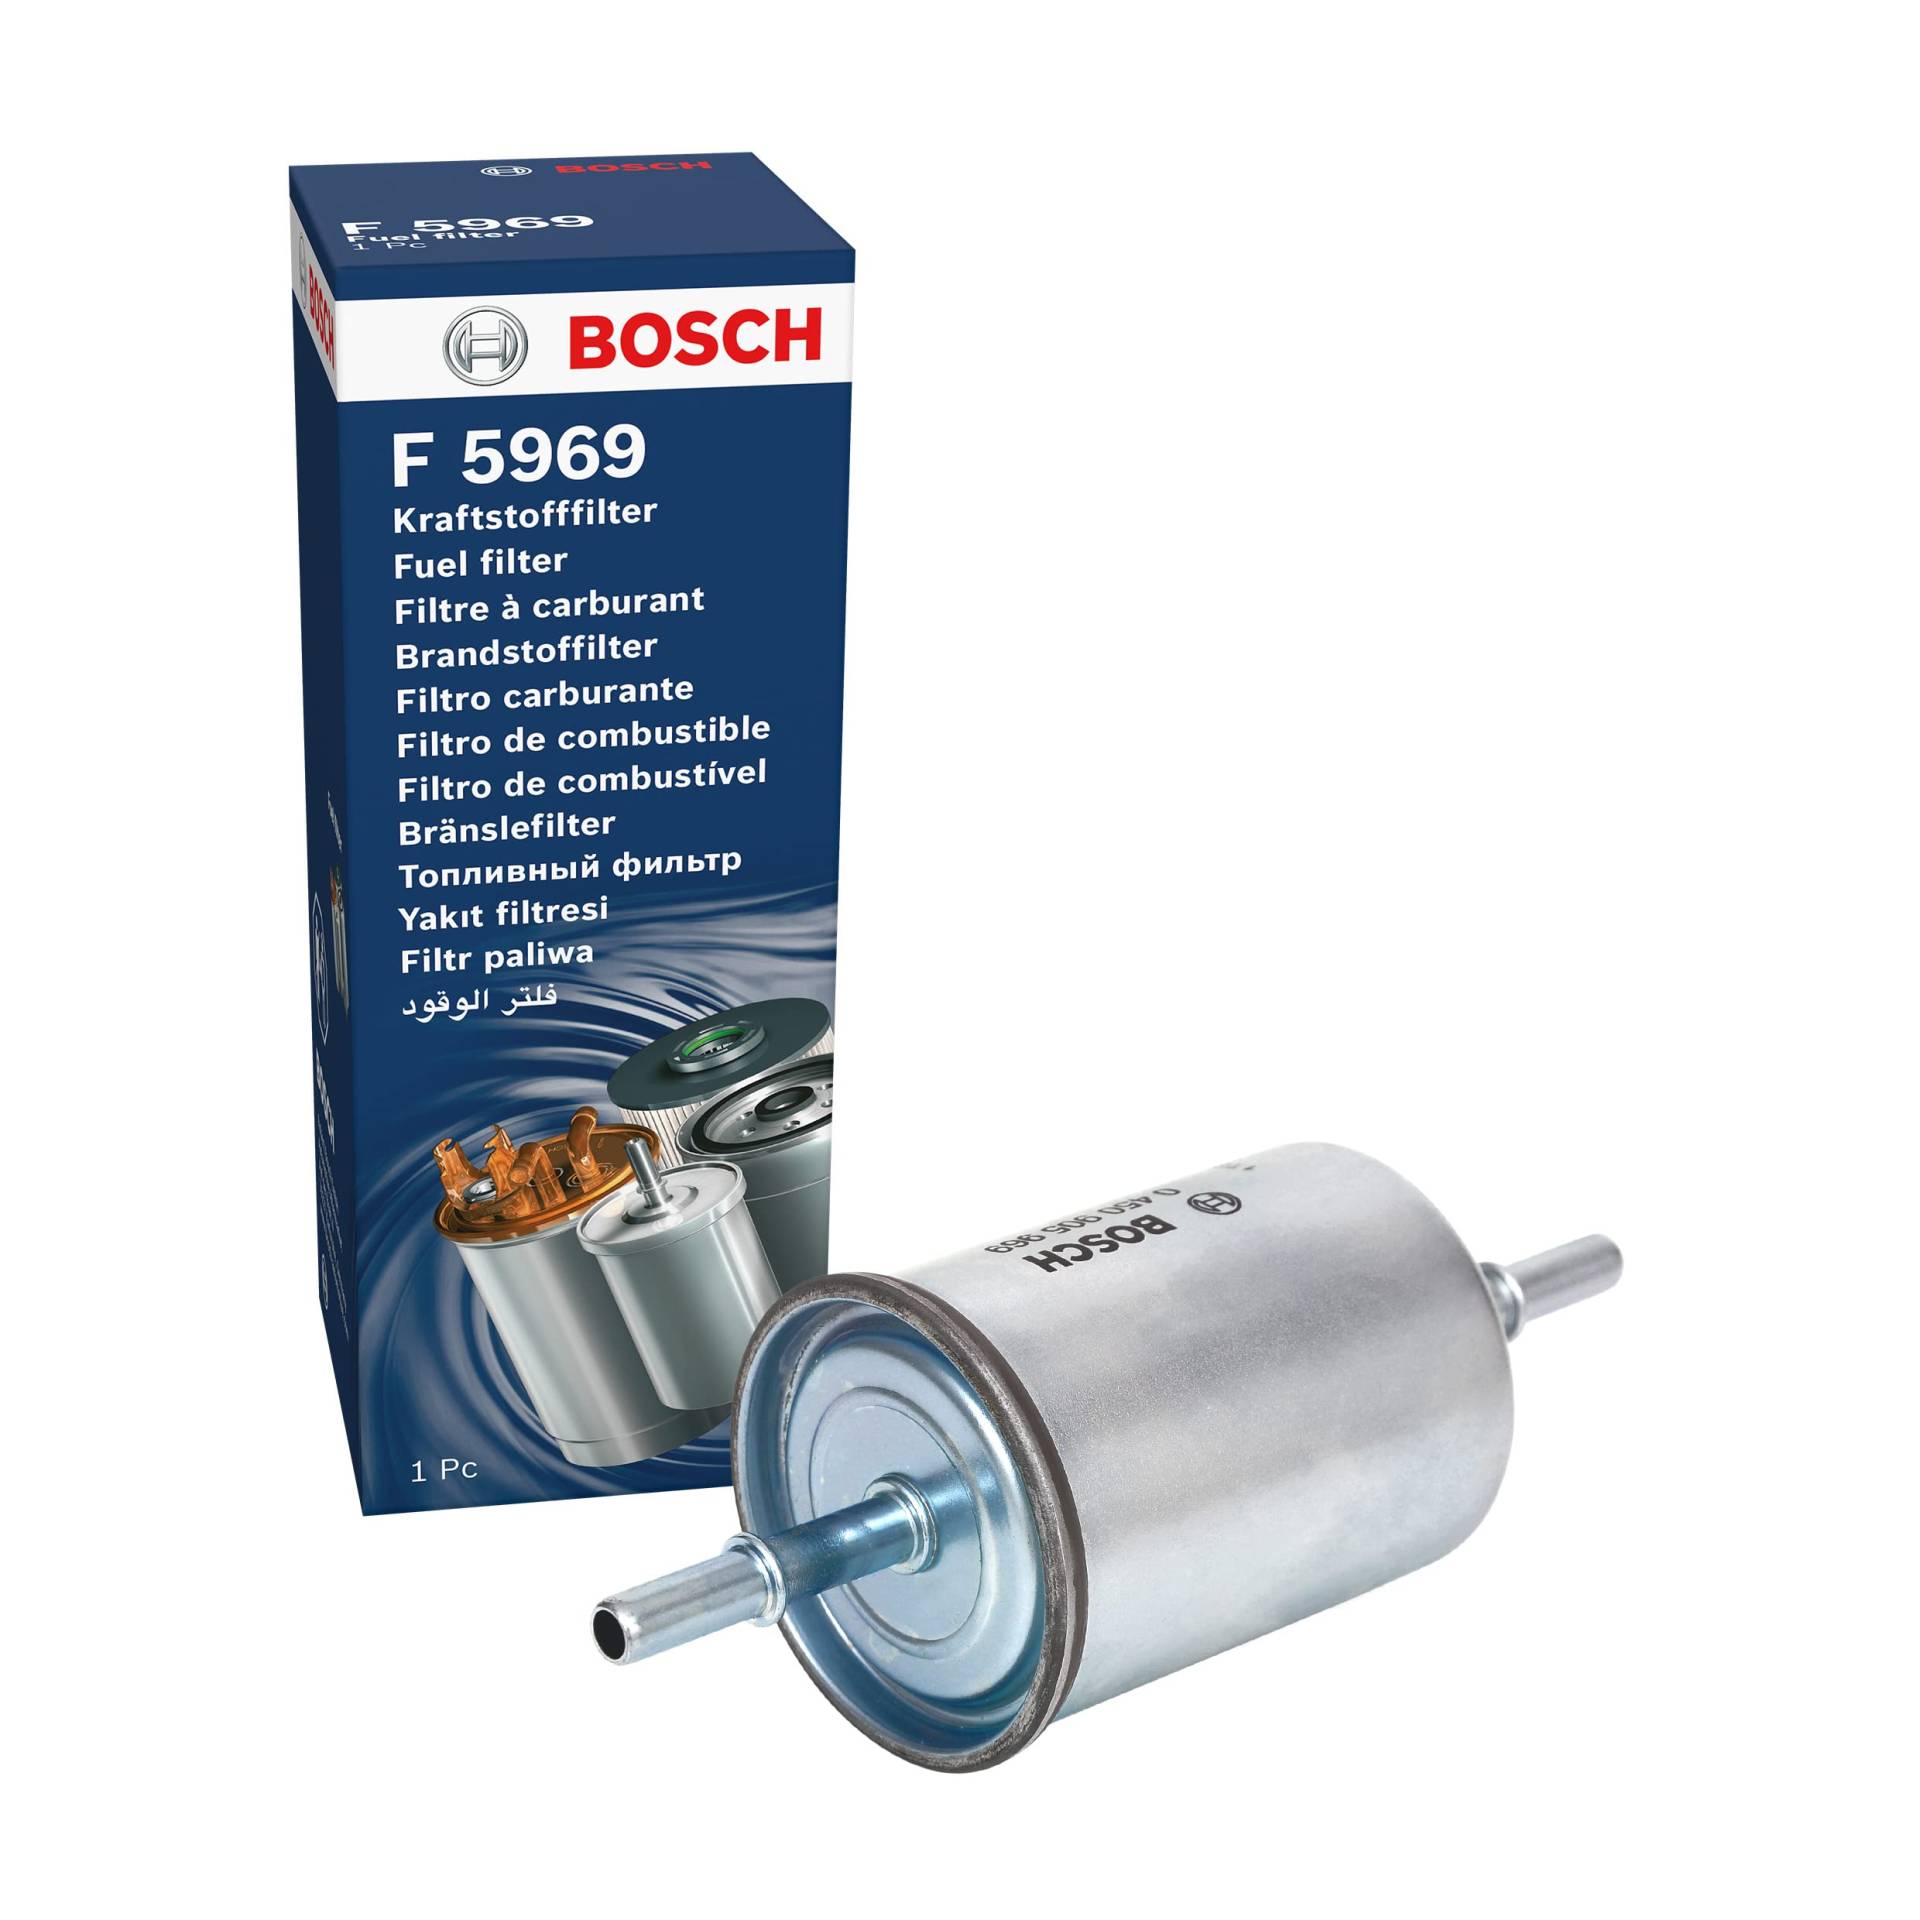 Bosch F5969 - Benzinfilter Auto von Bosch Automotive